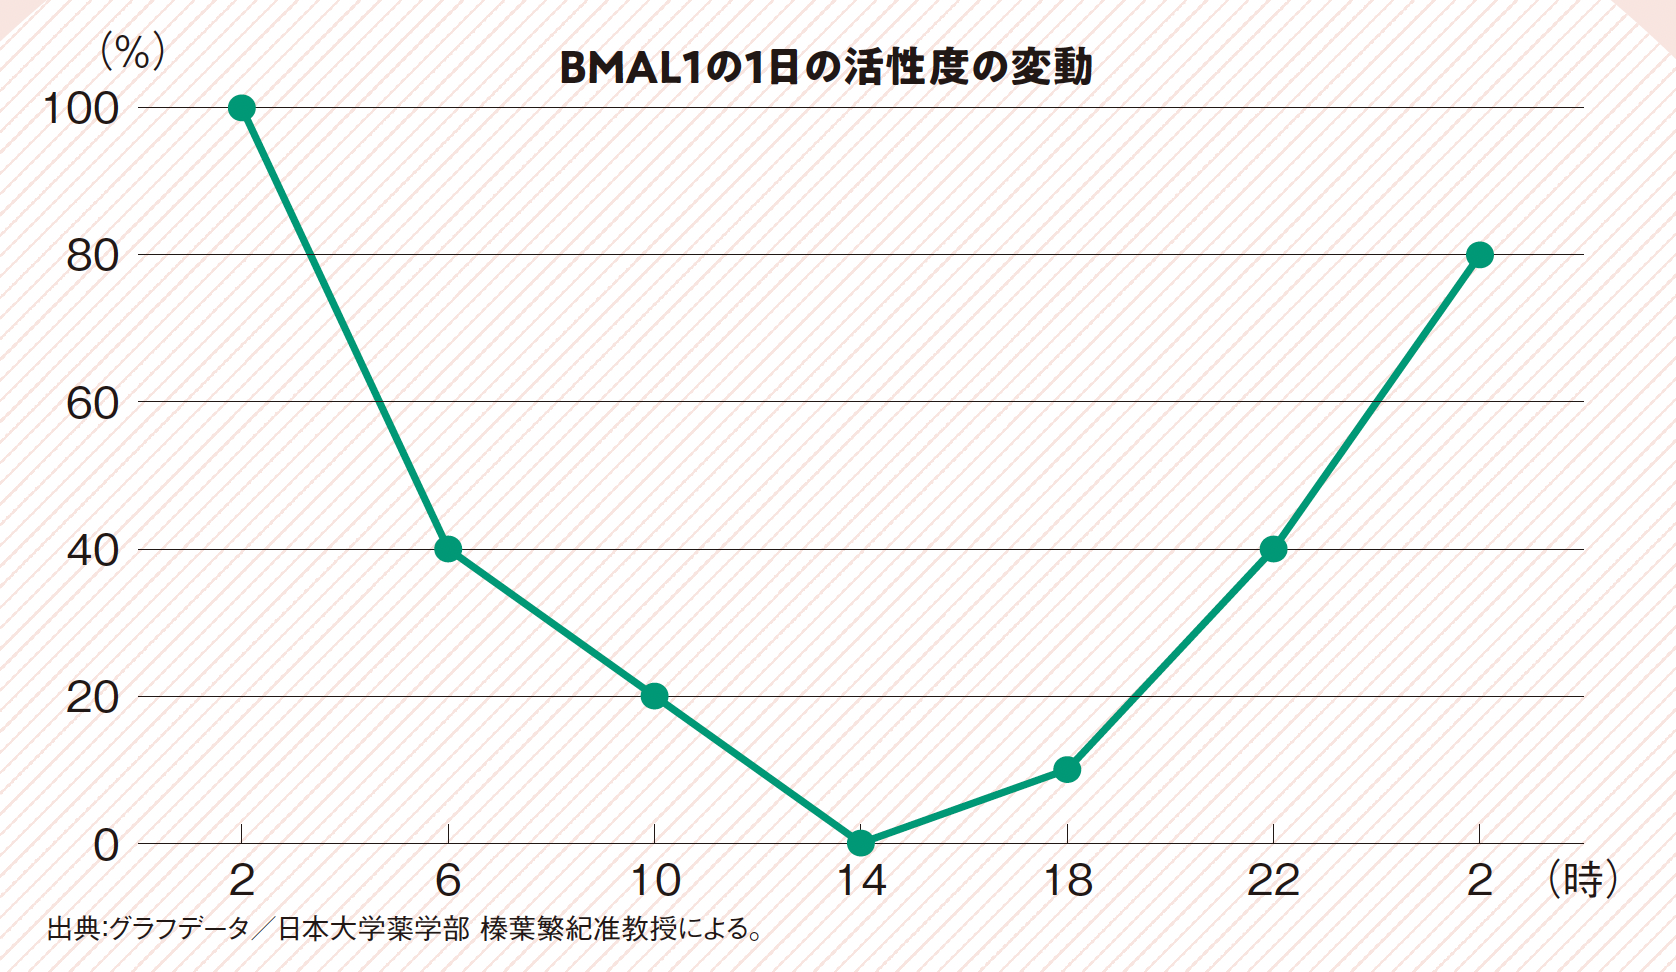 BMAL1の活性度の変動